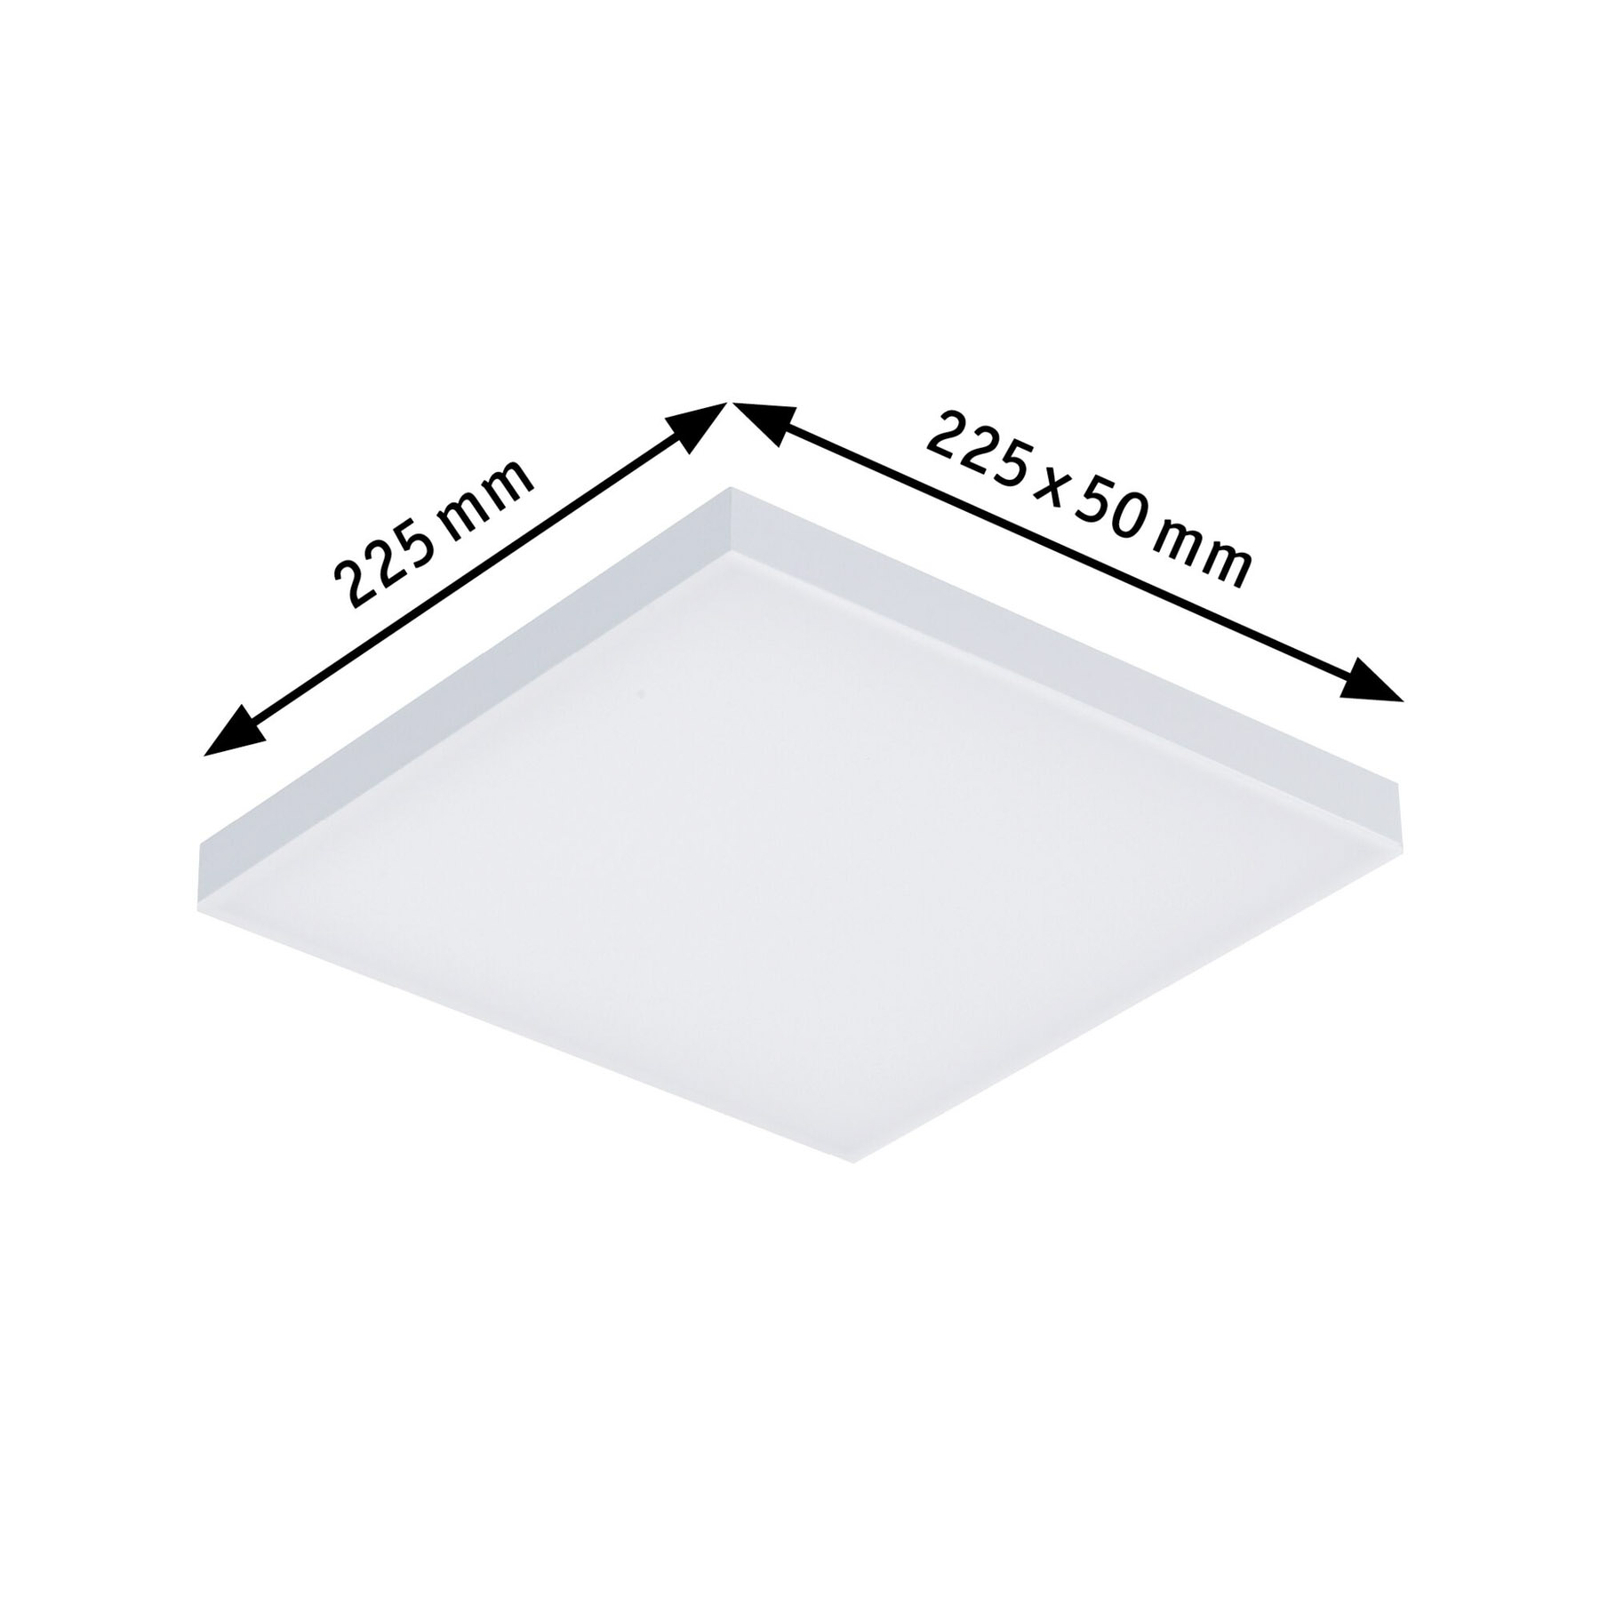 Paulmann Velora LED-taklampe, 22,5 cm x 22,5 cm